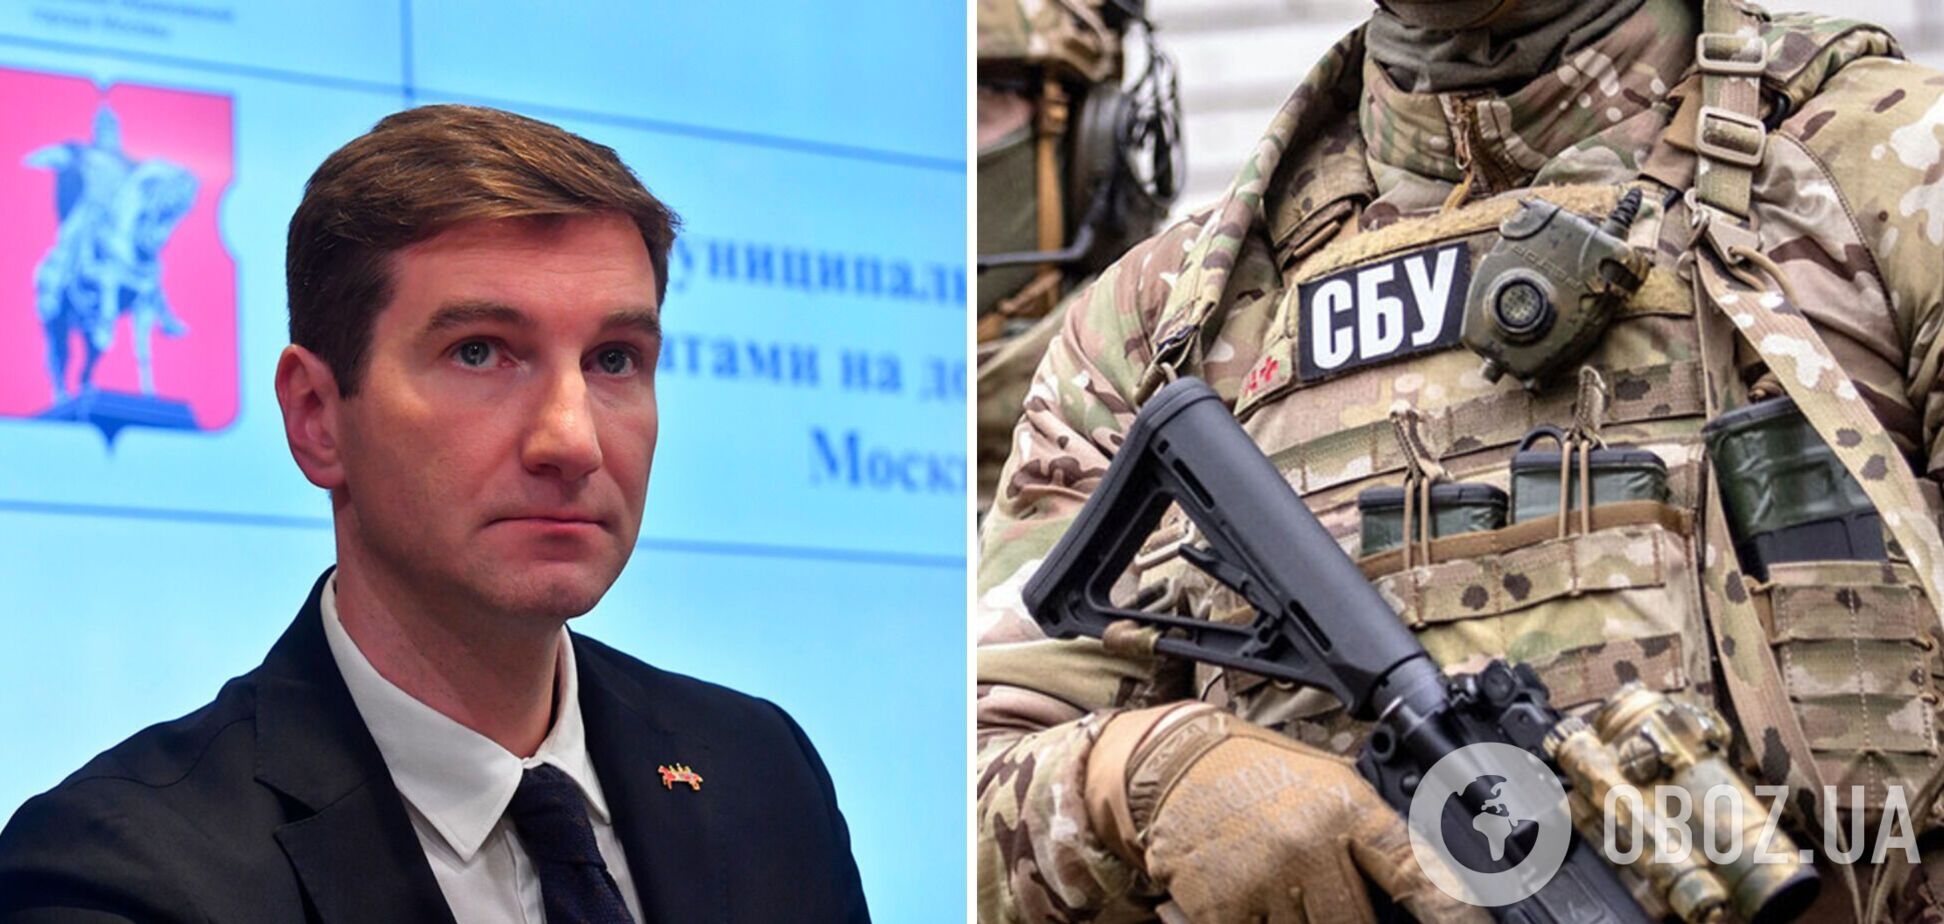 СБУ сообщила о подозрении одному из руководителей Russia Today, который призывал уничтожать украинцев